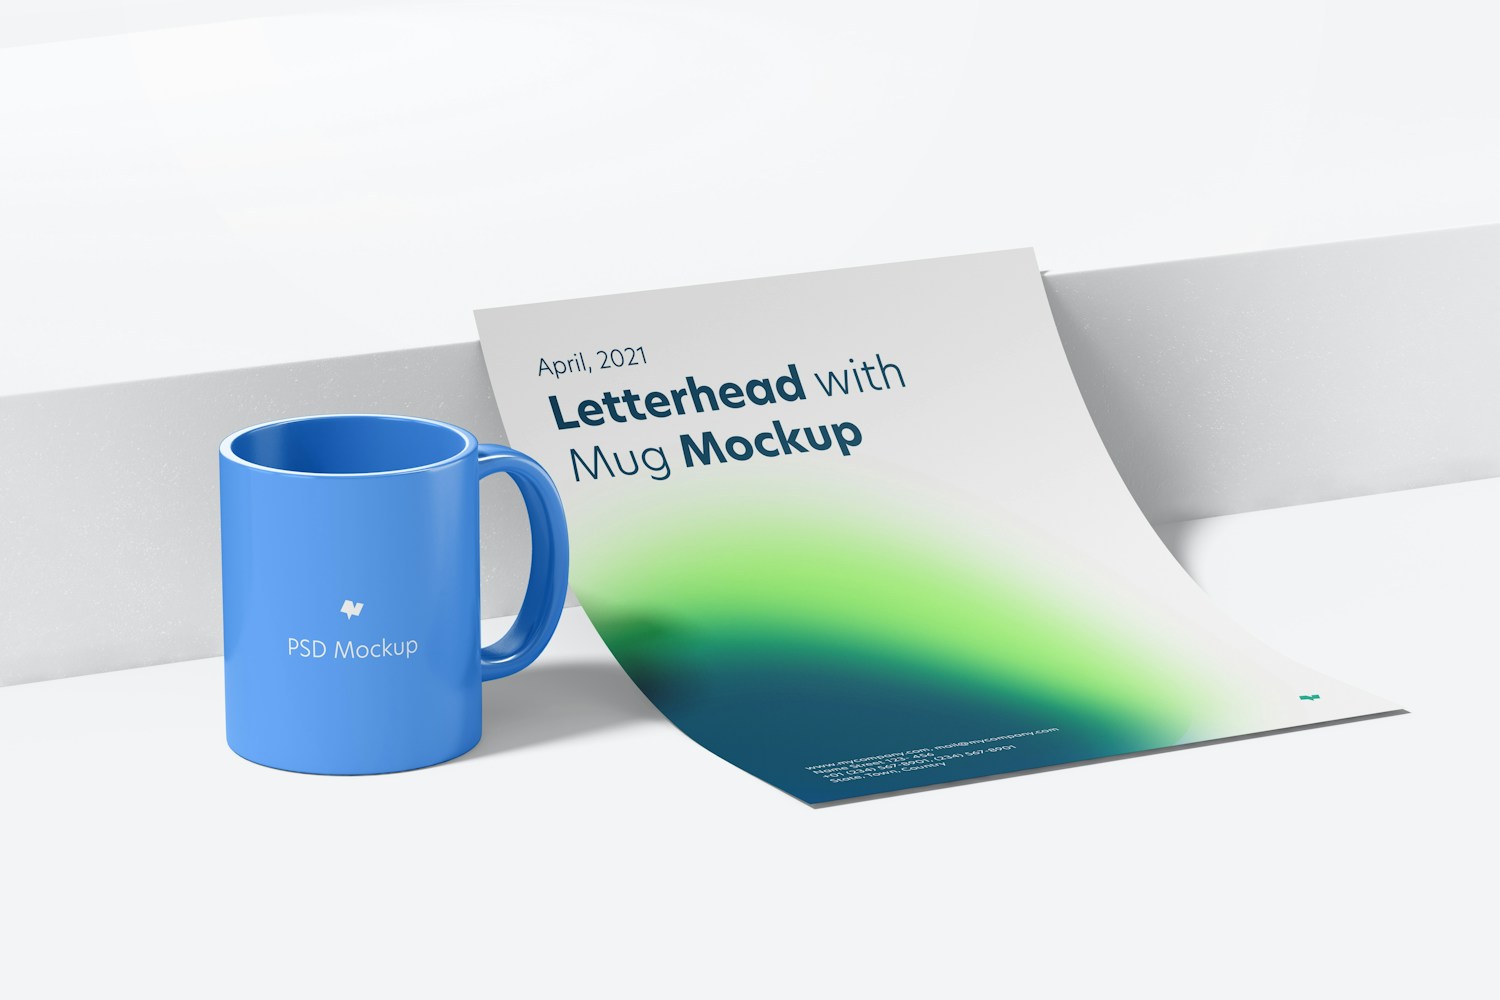 Letterhead with Mug Mockup